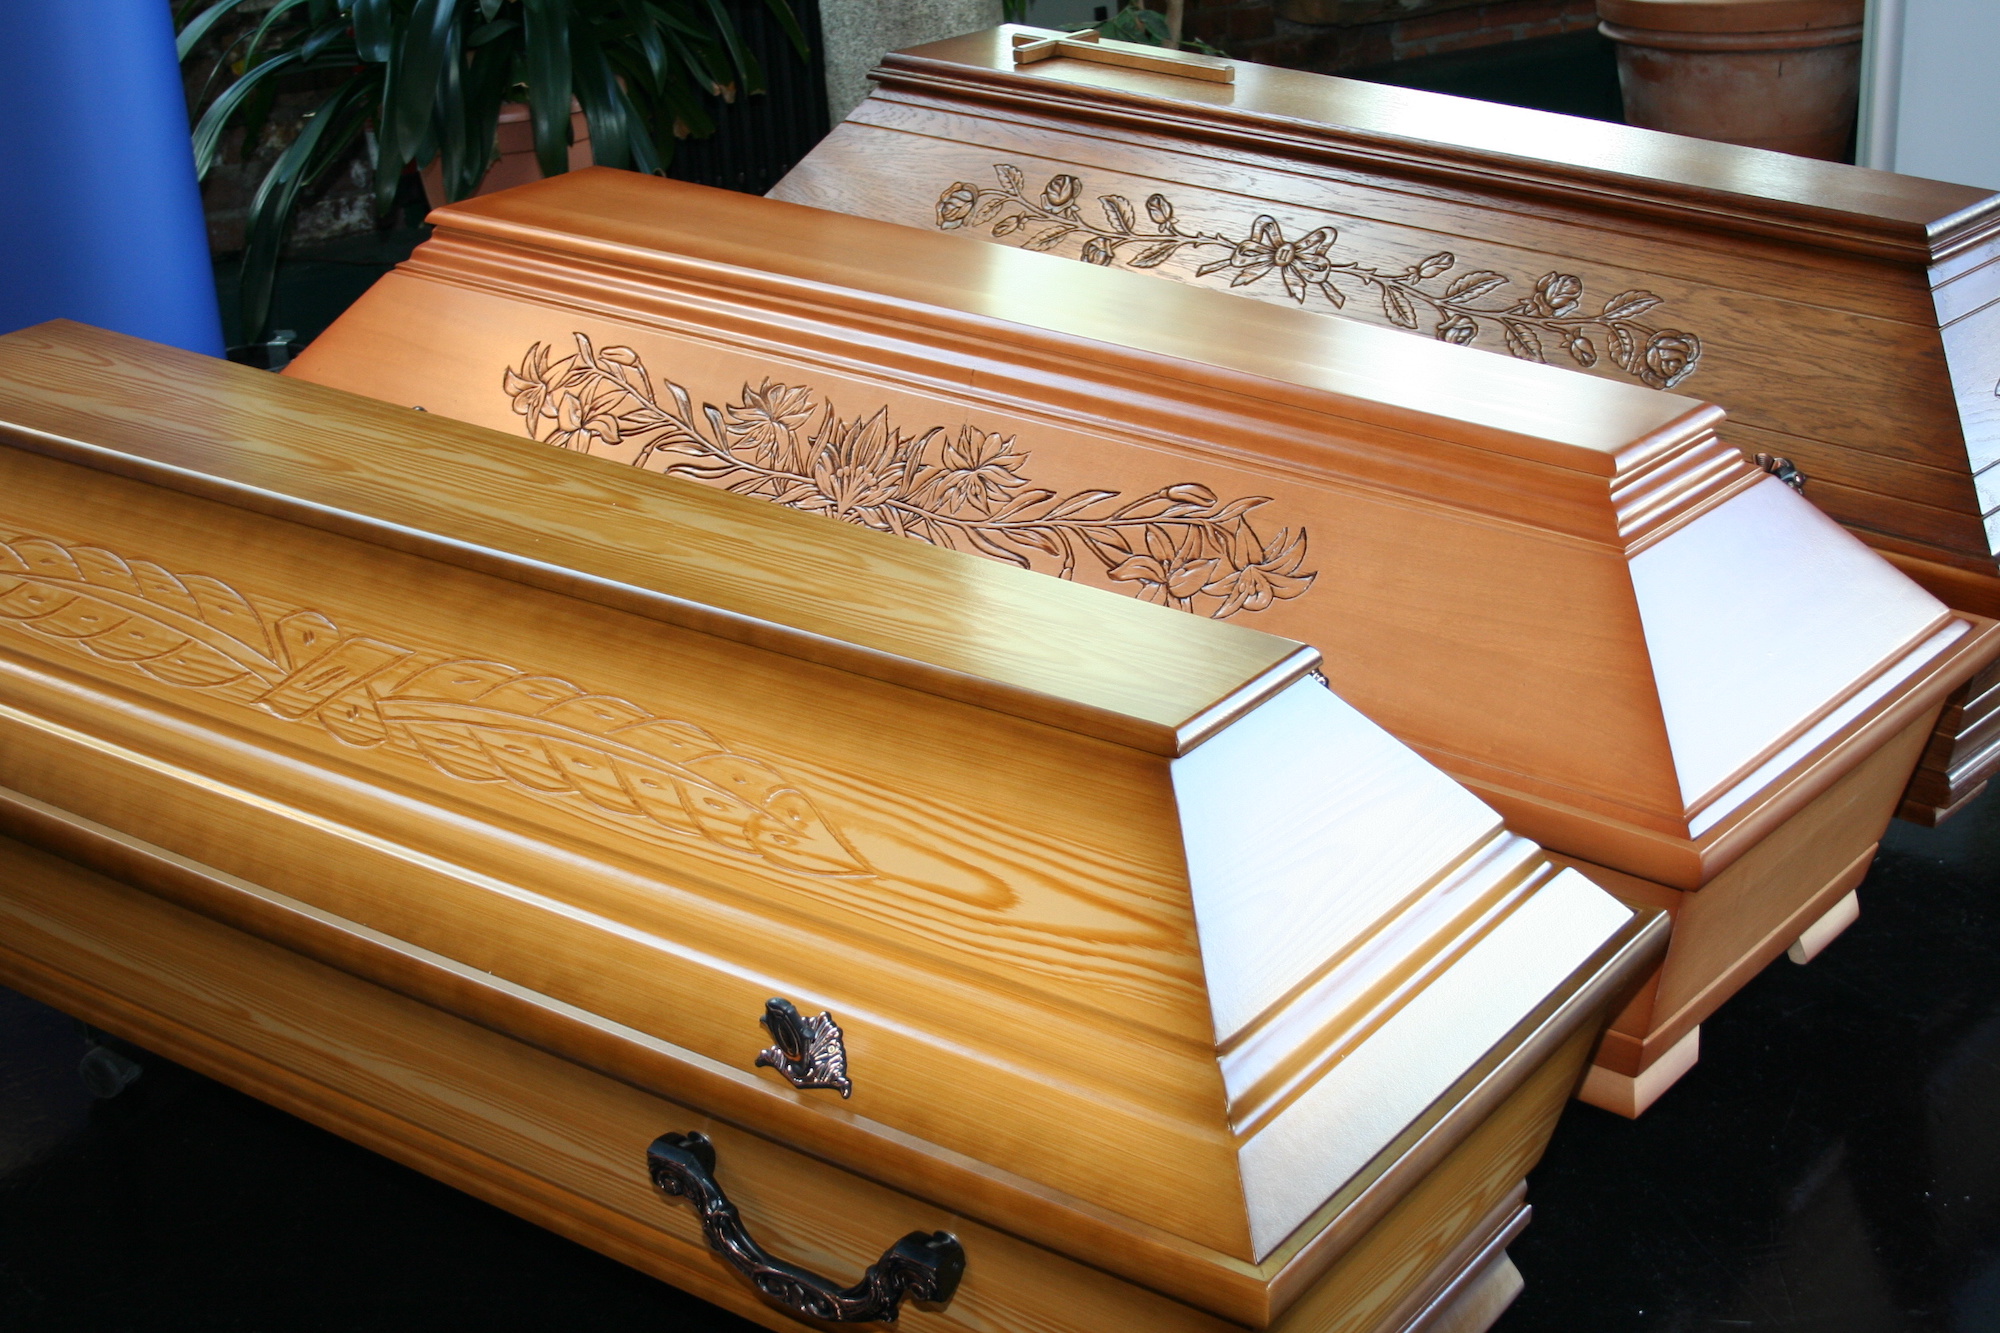 Peut-on fabriquer un cercueil soi-même ?